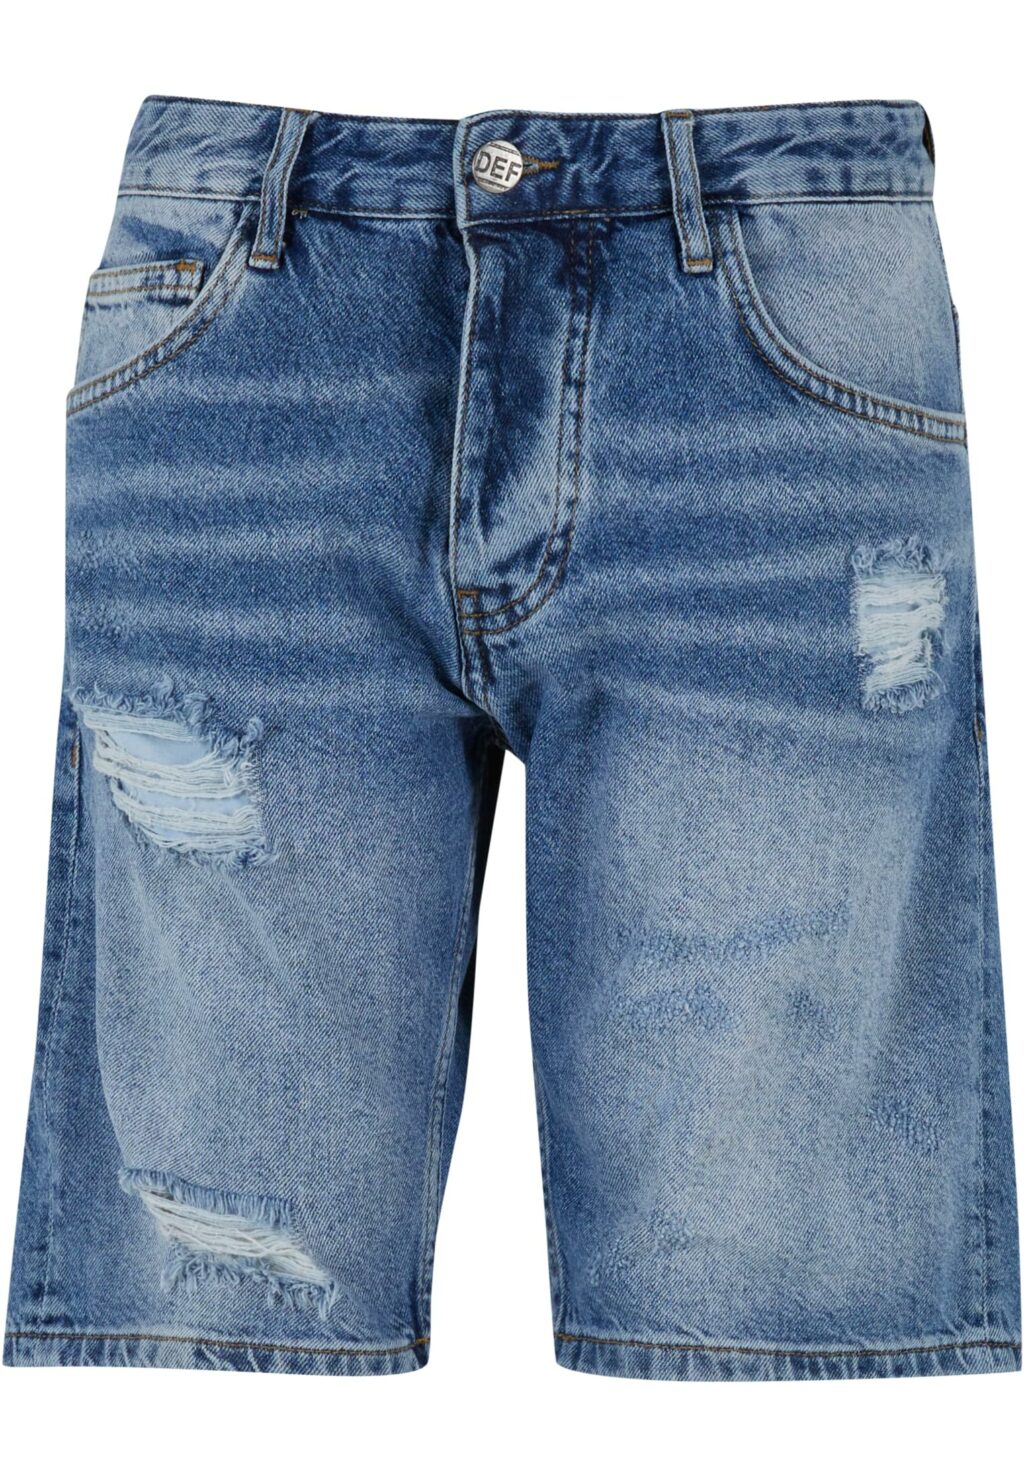 Jeanshorts Milo blue DFSH036